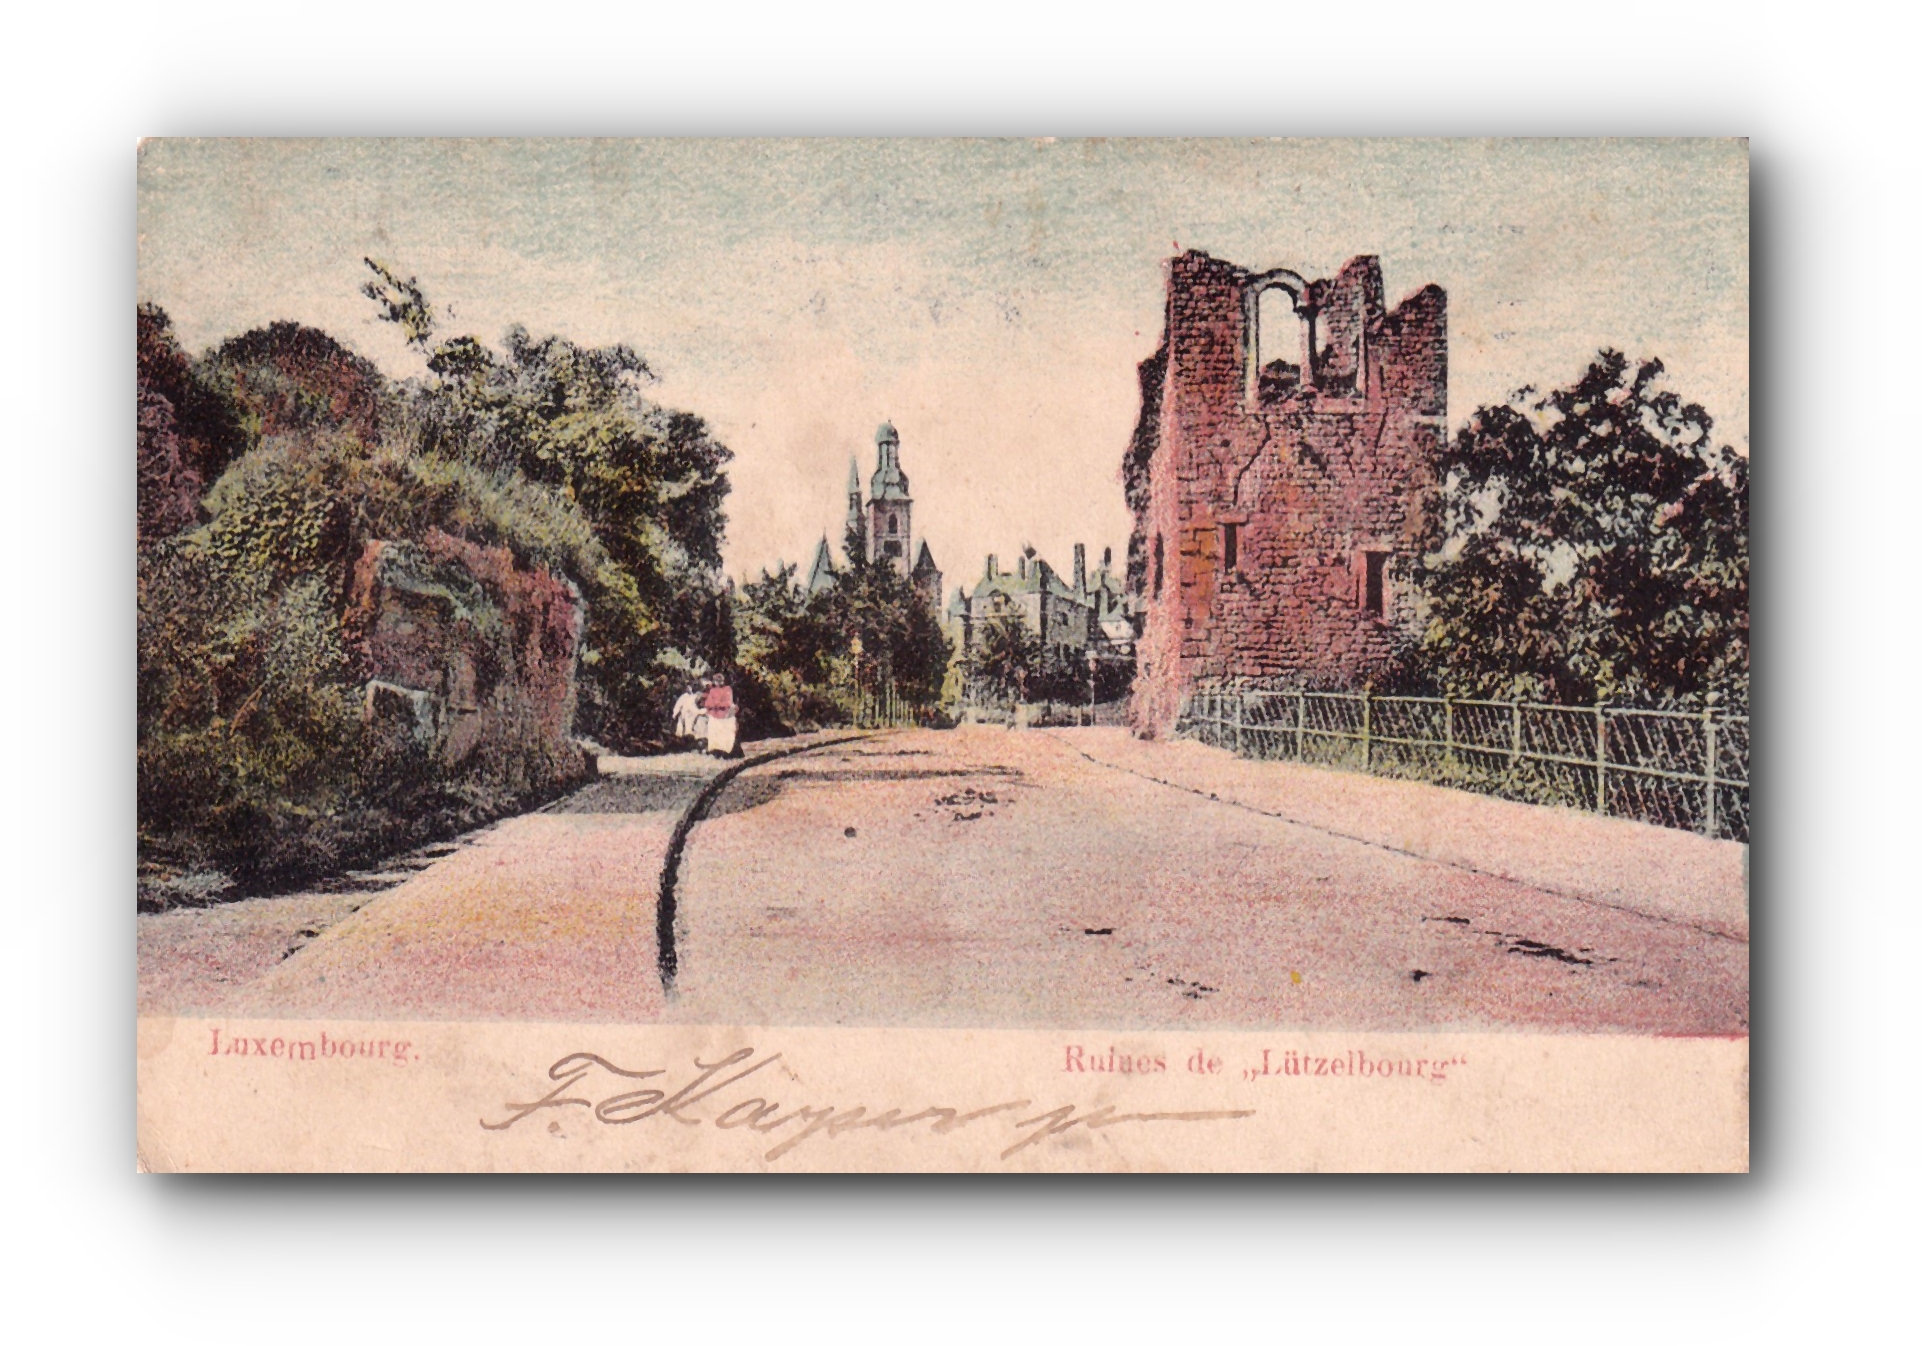 Ruines de " Lüzelbourg "  - La dent creuse - 18.10.1908